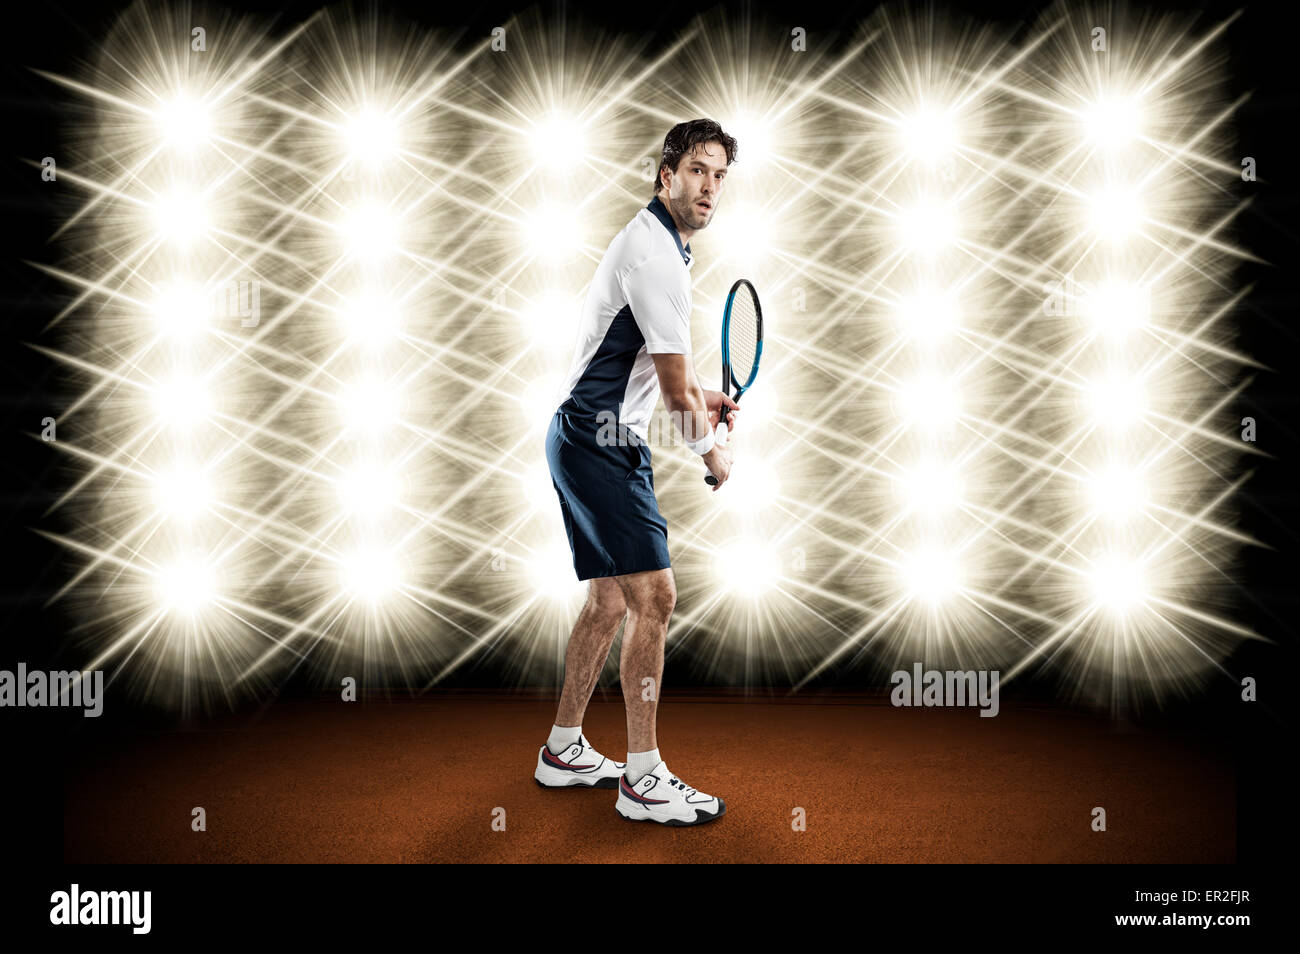 Giocatore di tennis giocando nella parte anteriore delle luci. Foto Stock